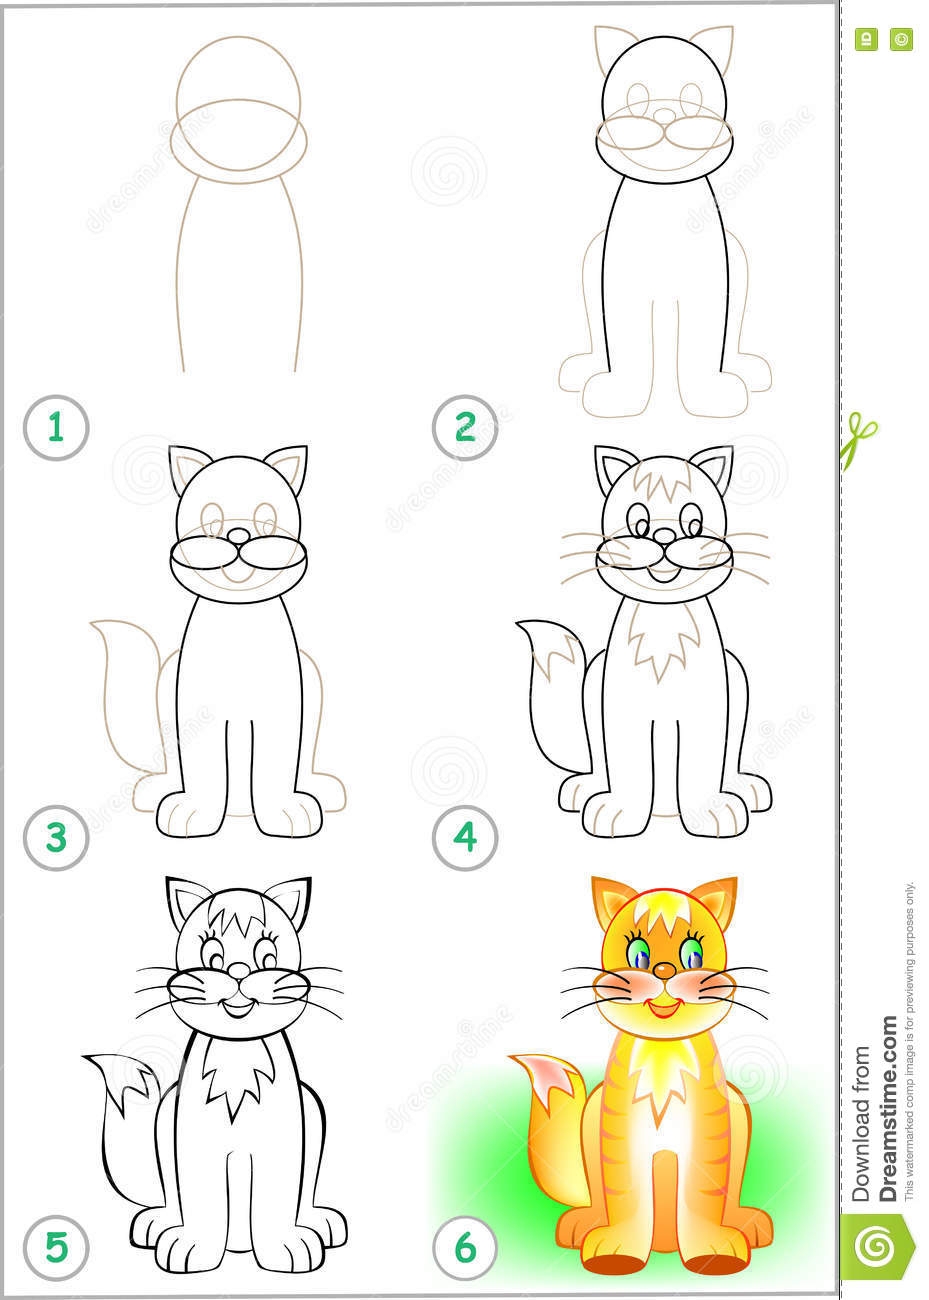 Как нарисовать котика по фигурам